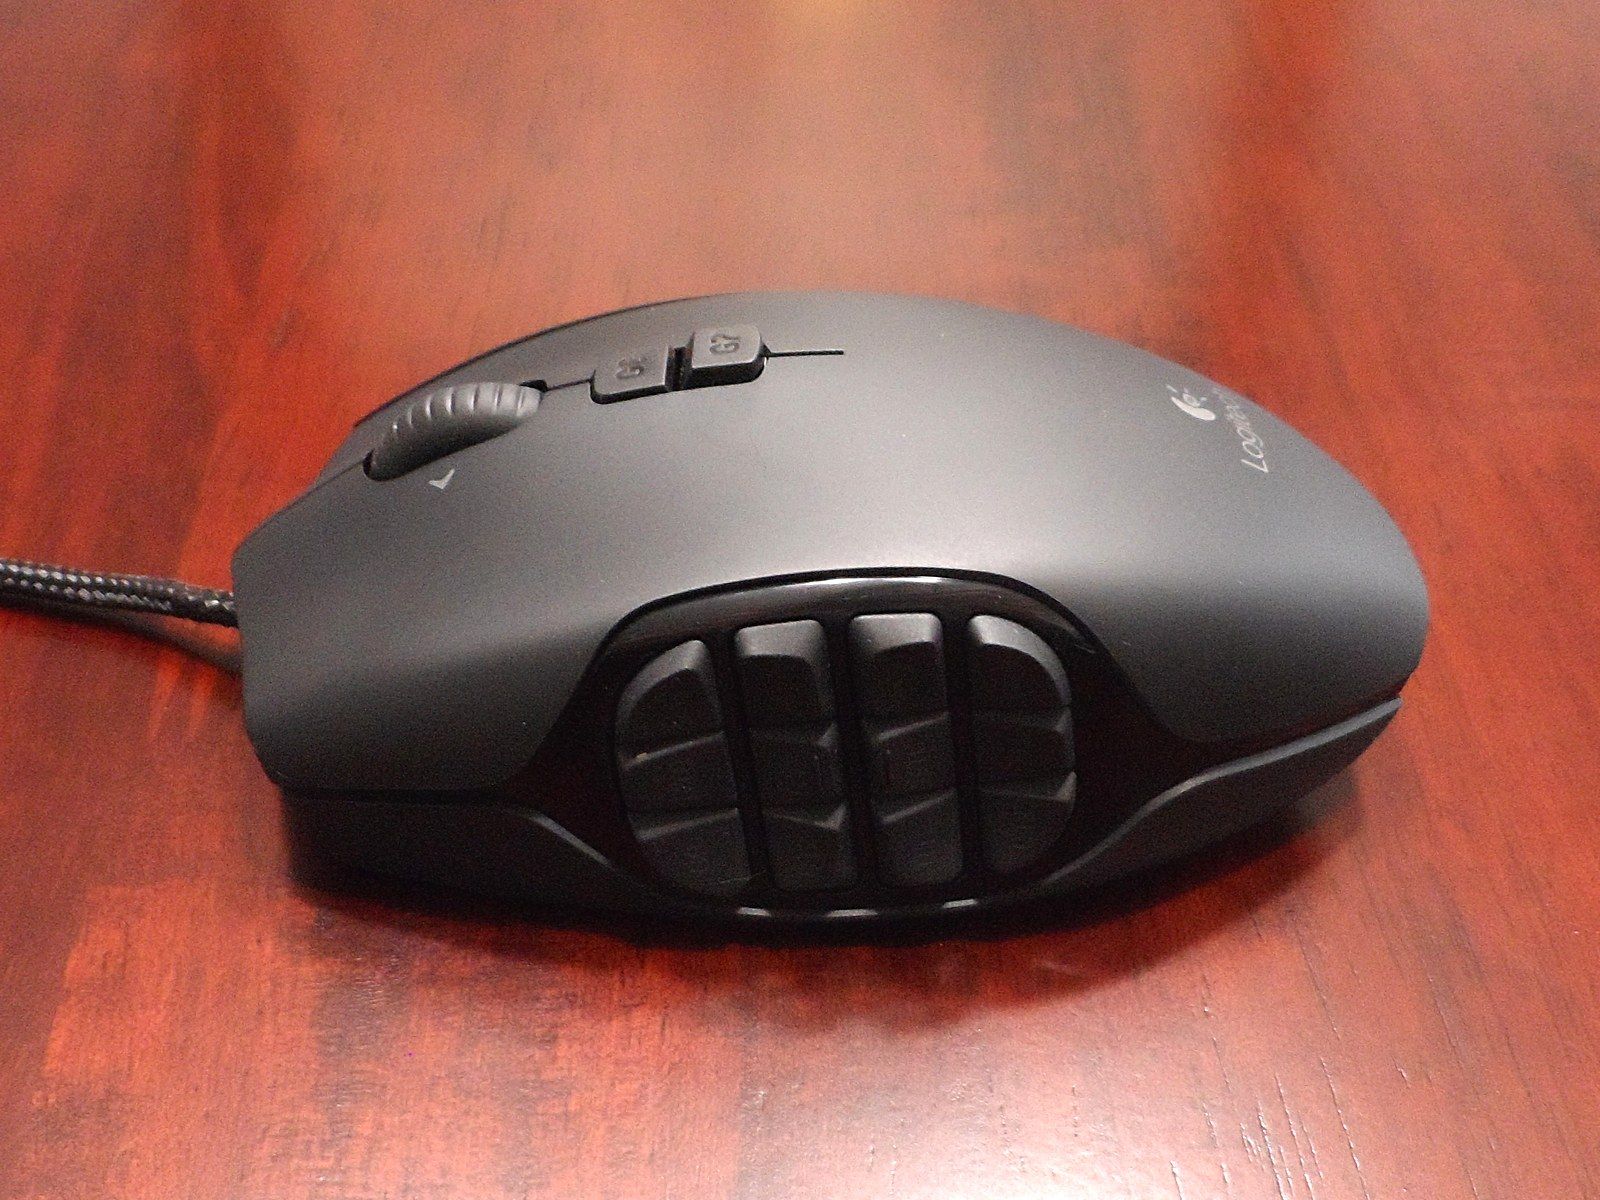 razer naga logitech g600 mouse review